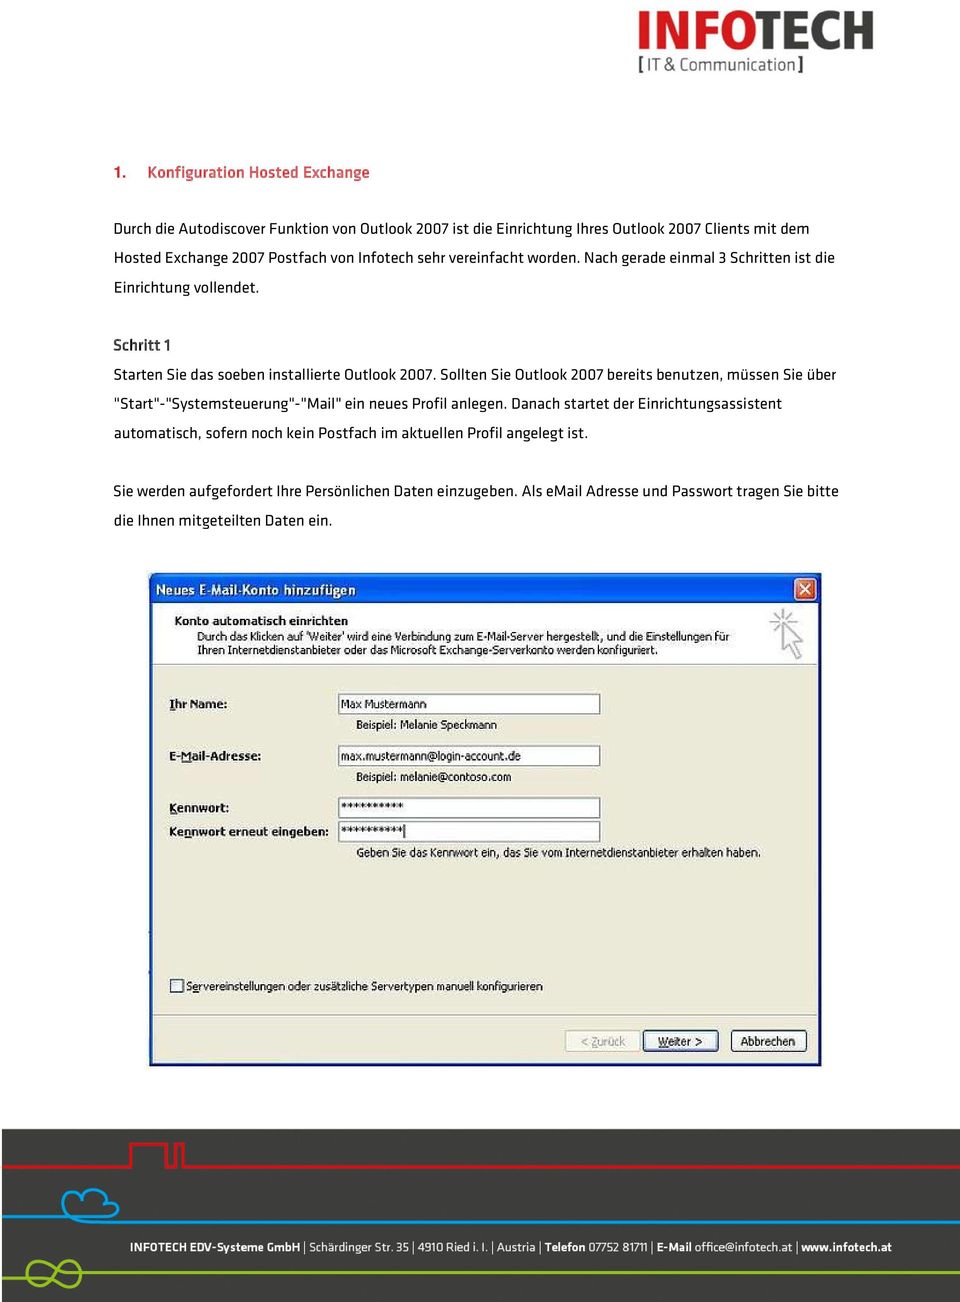 Sollten Sie Outlook 2007 bereits benutzen, müssen Sie über "Start"-"Systemsteuerung"-"Mail" ein neues Profil anlegen.